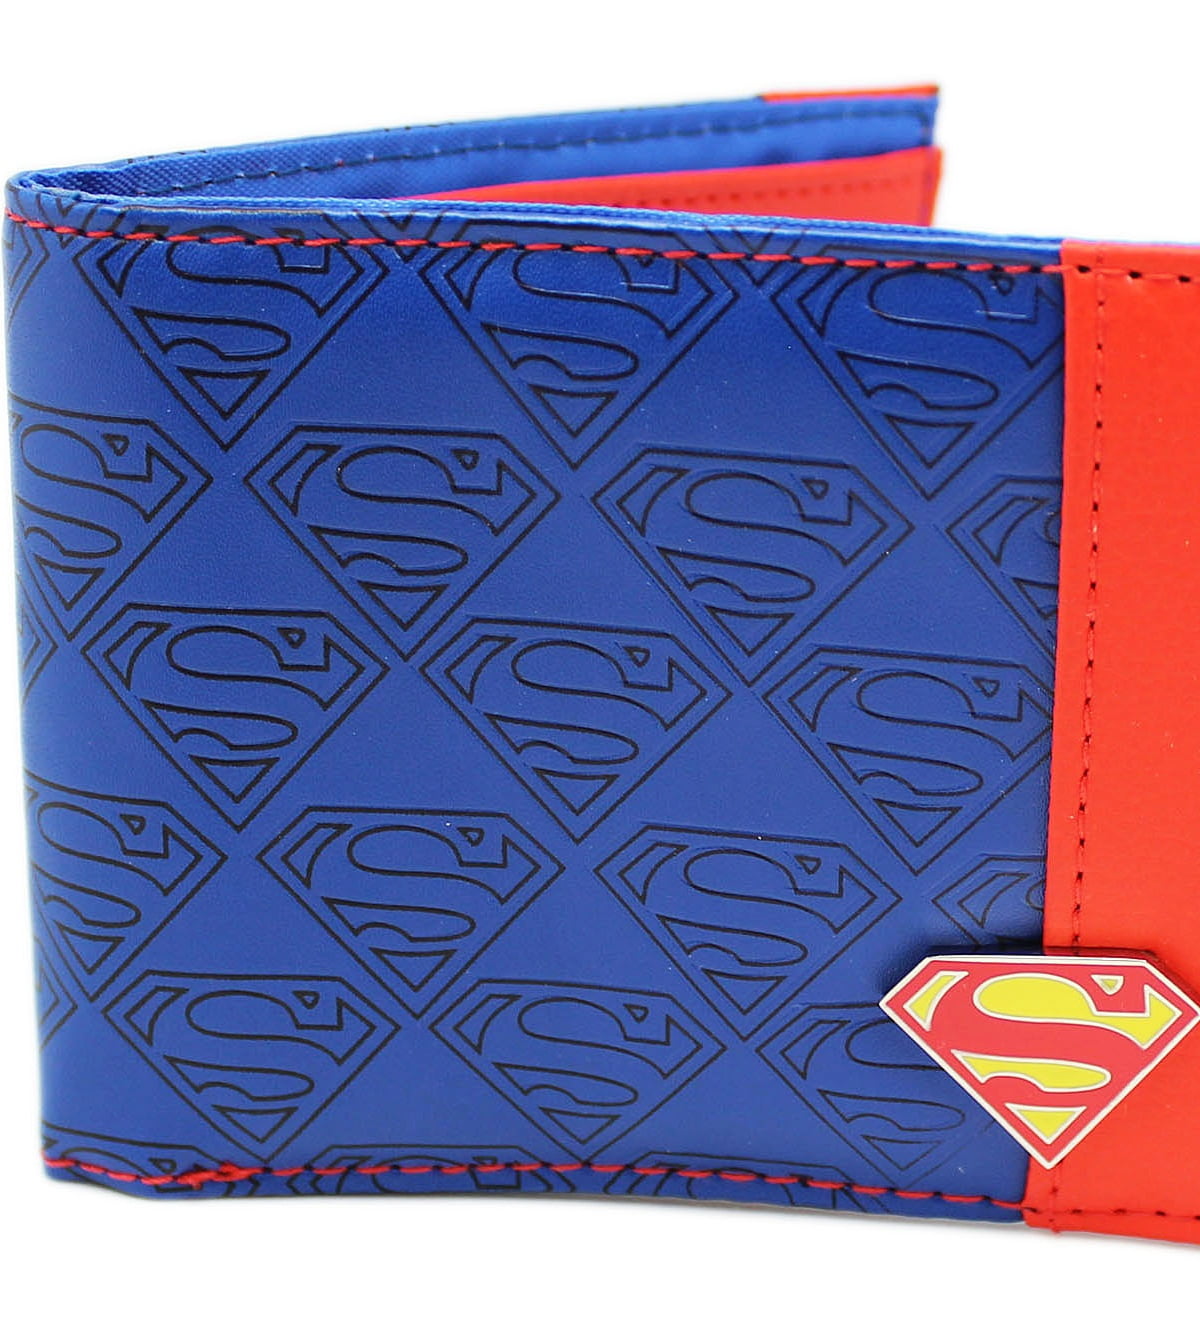 SUPERMAN Man of Steel Bi-Fold Wallet Billfold Free shipping